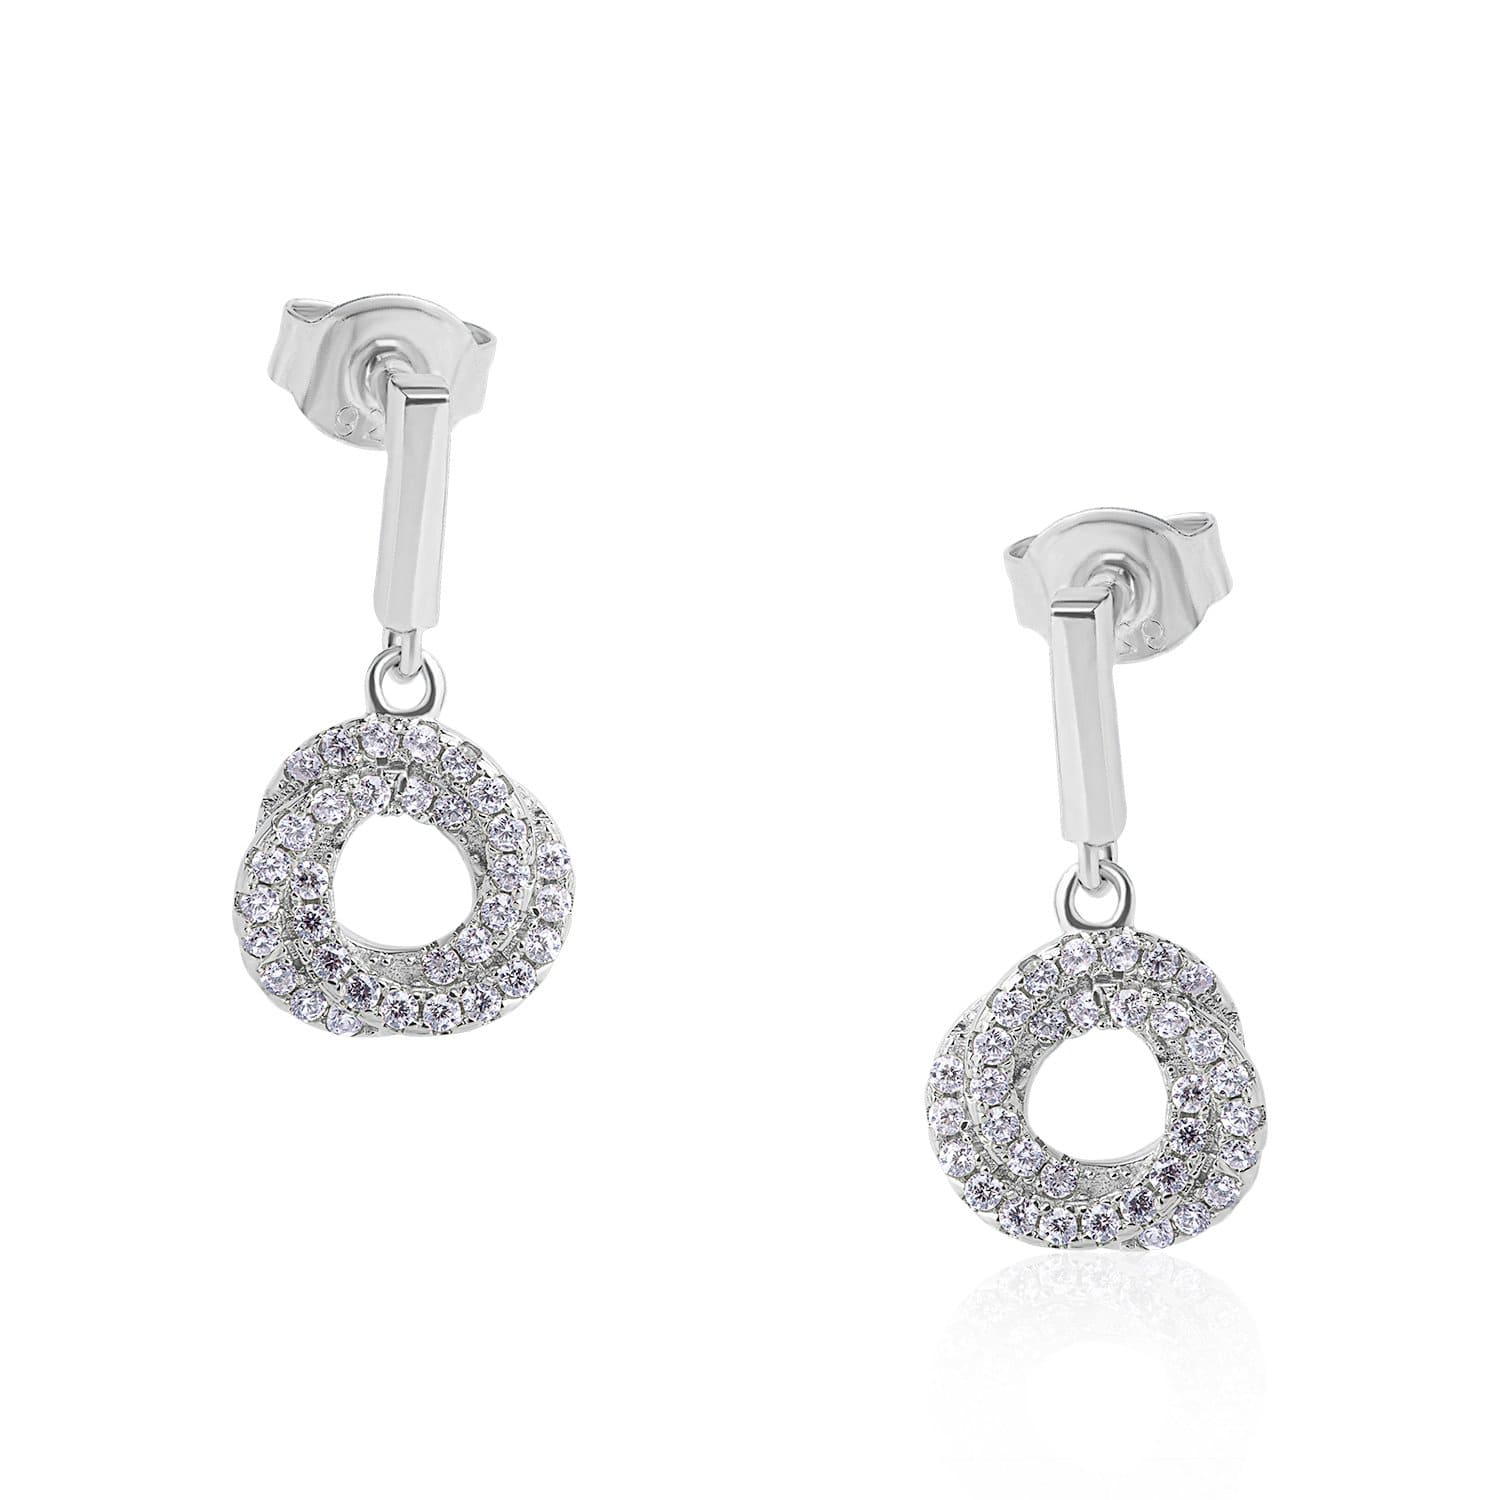 Lynora Jewellery Earring Sterling Silver Knot Earrings Sterling Silver